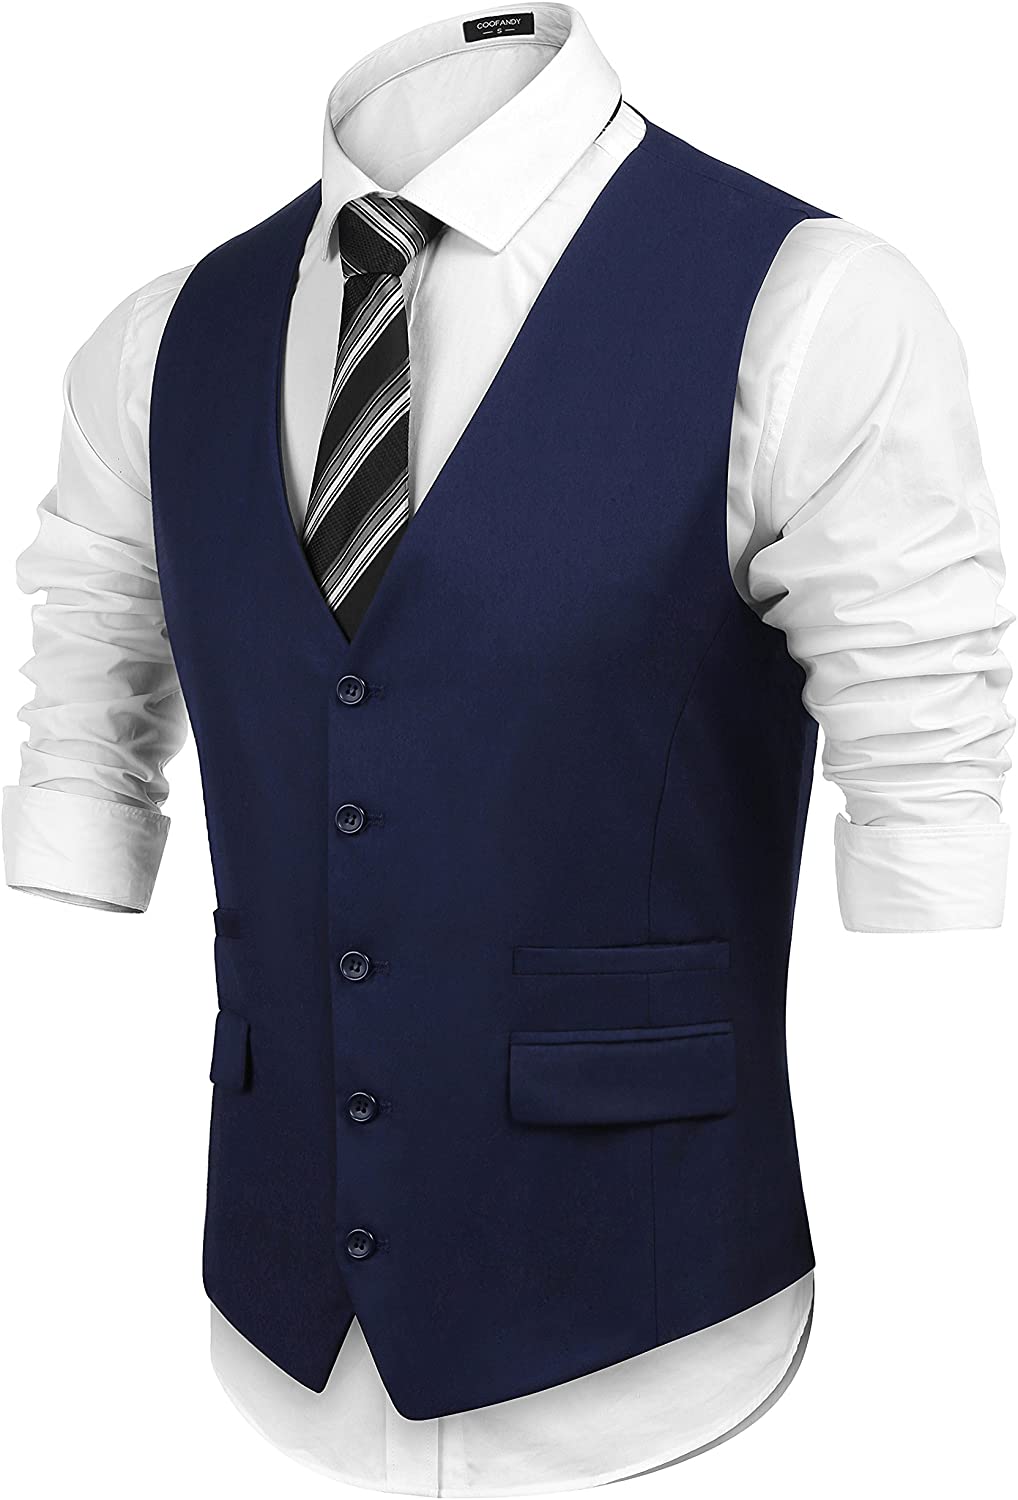 COOFANDY Men's Business Suit Vest,Slim Fit Skinny Wedding Waistcoat | eBay